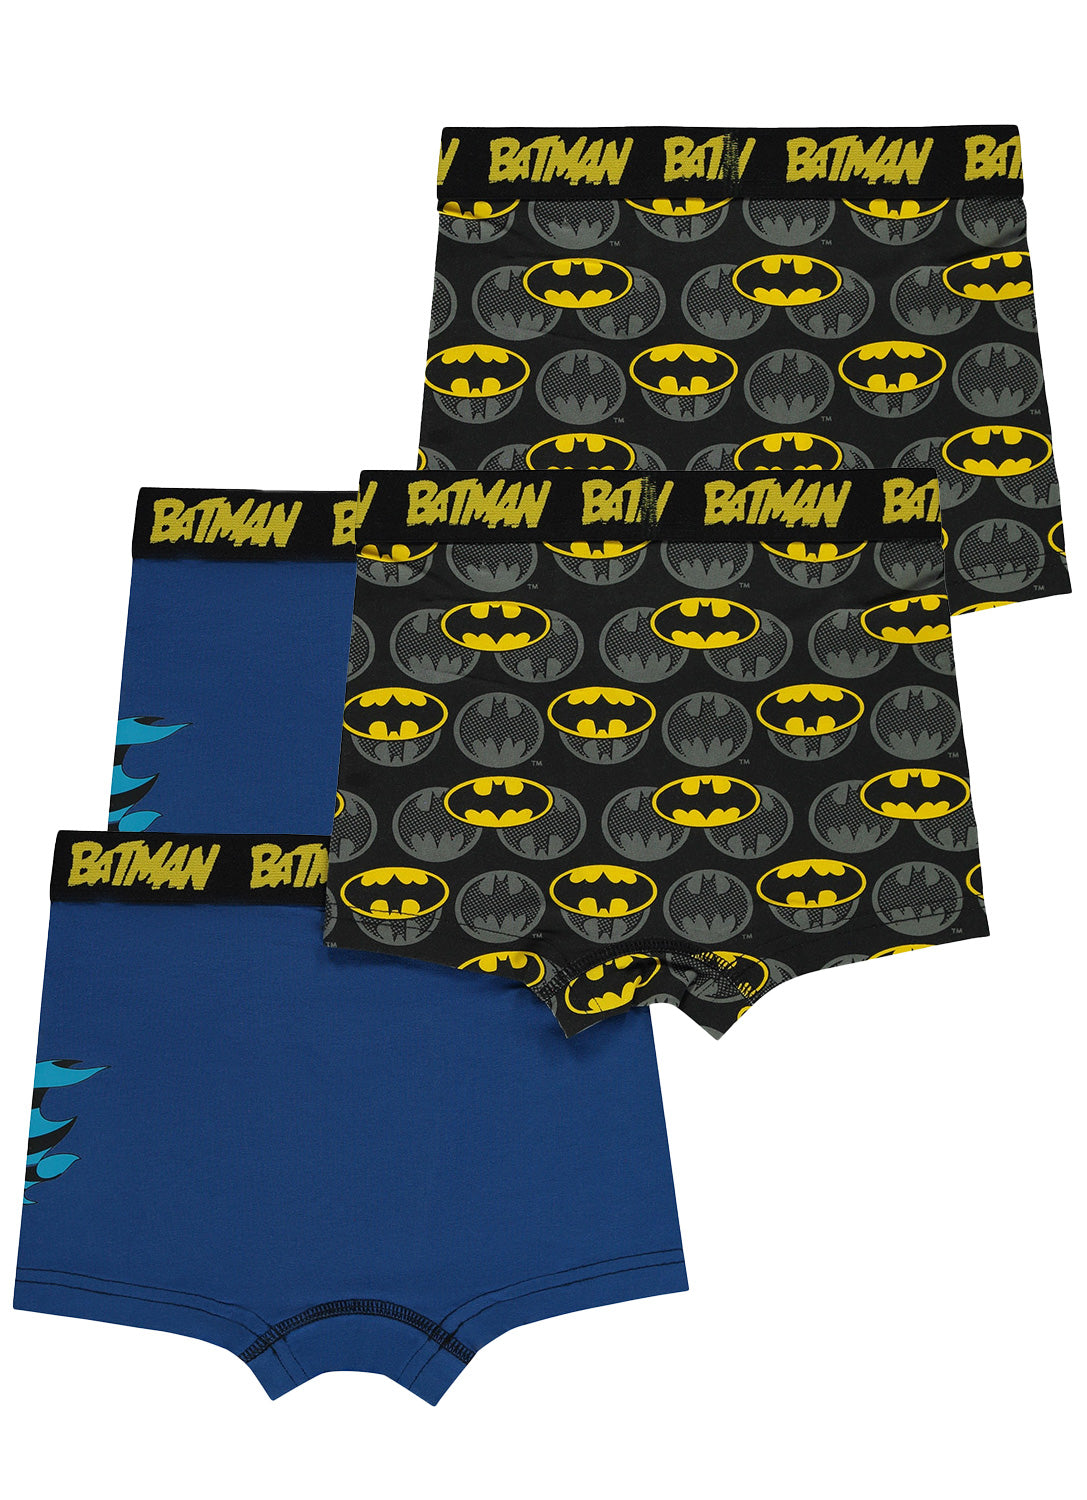 Boys Batman Cotton Underwear - 4 Pack